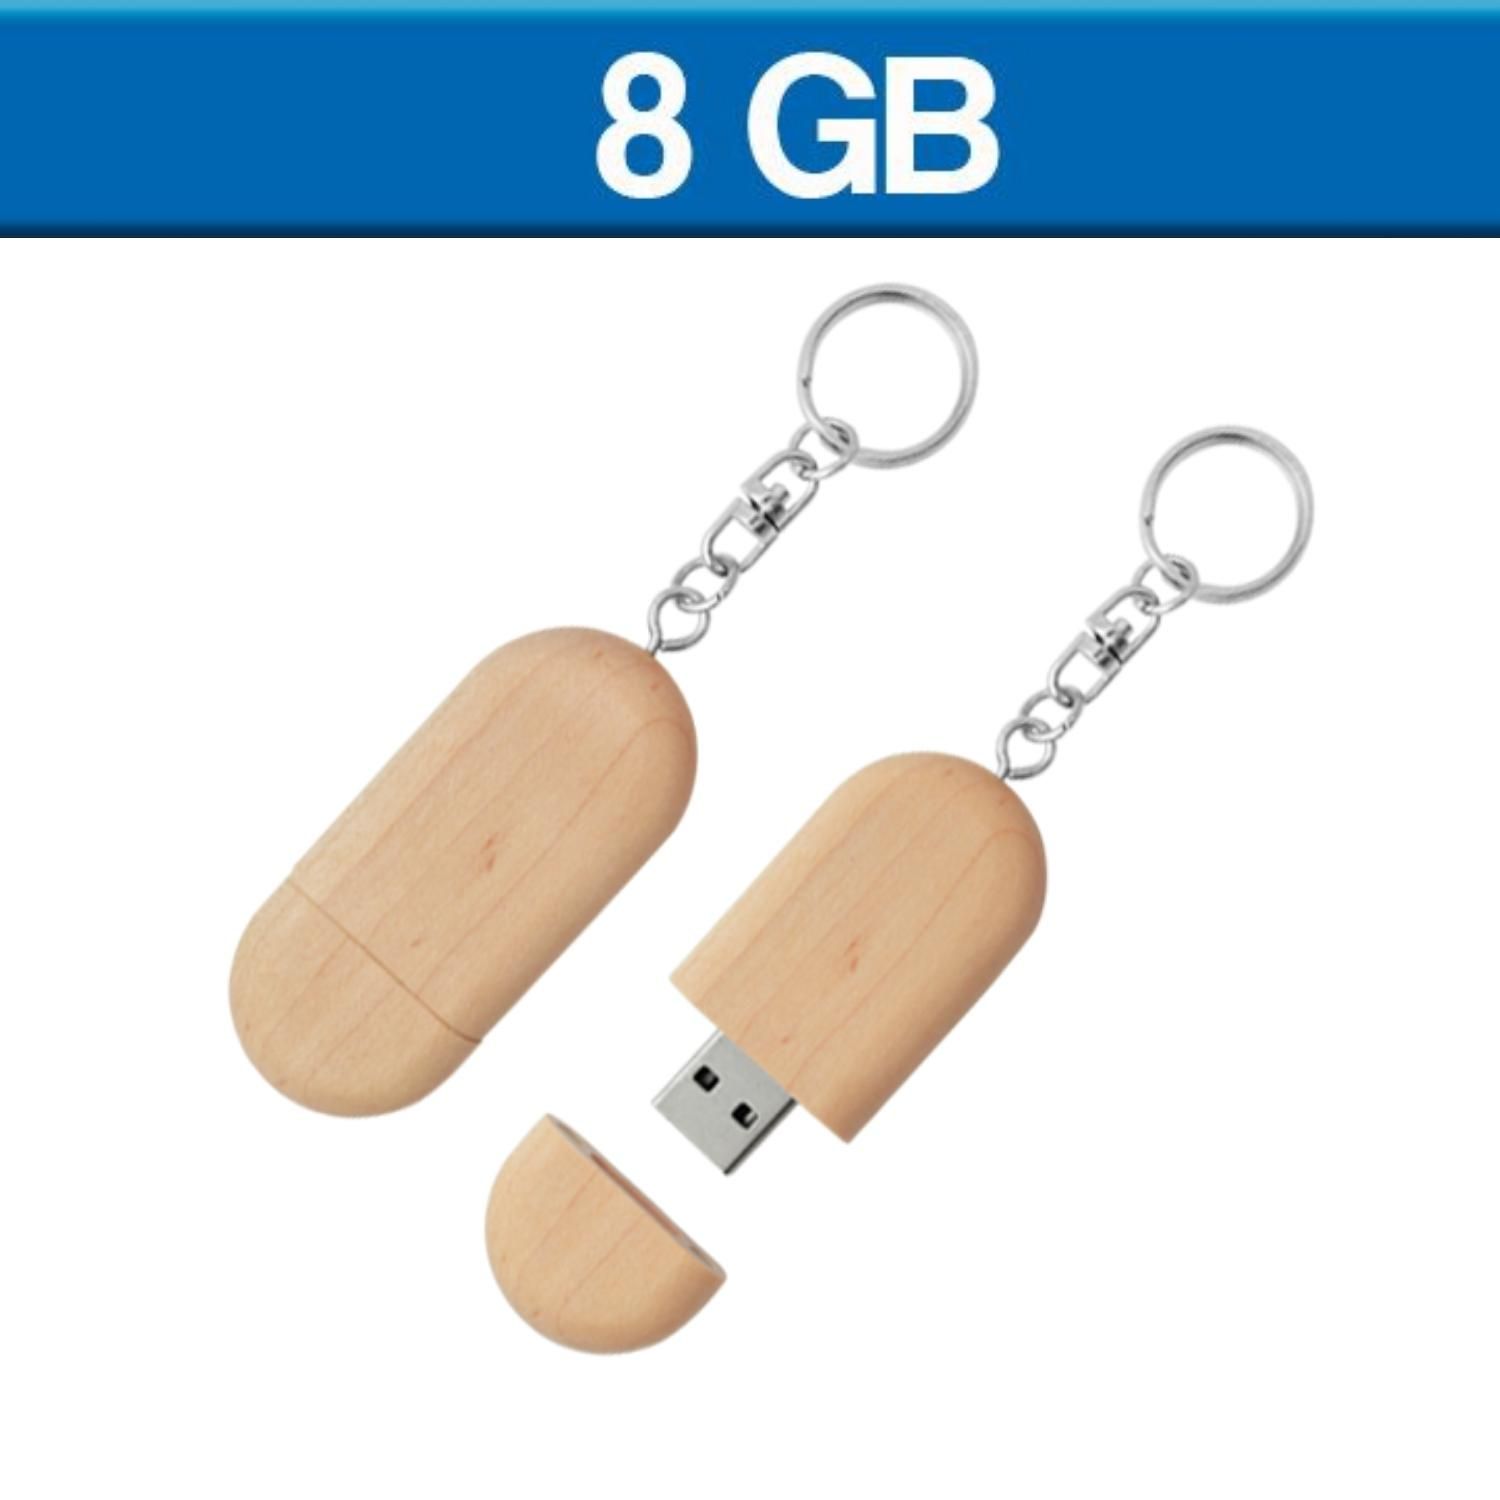 USB Llavero de madera 8GB.